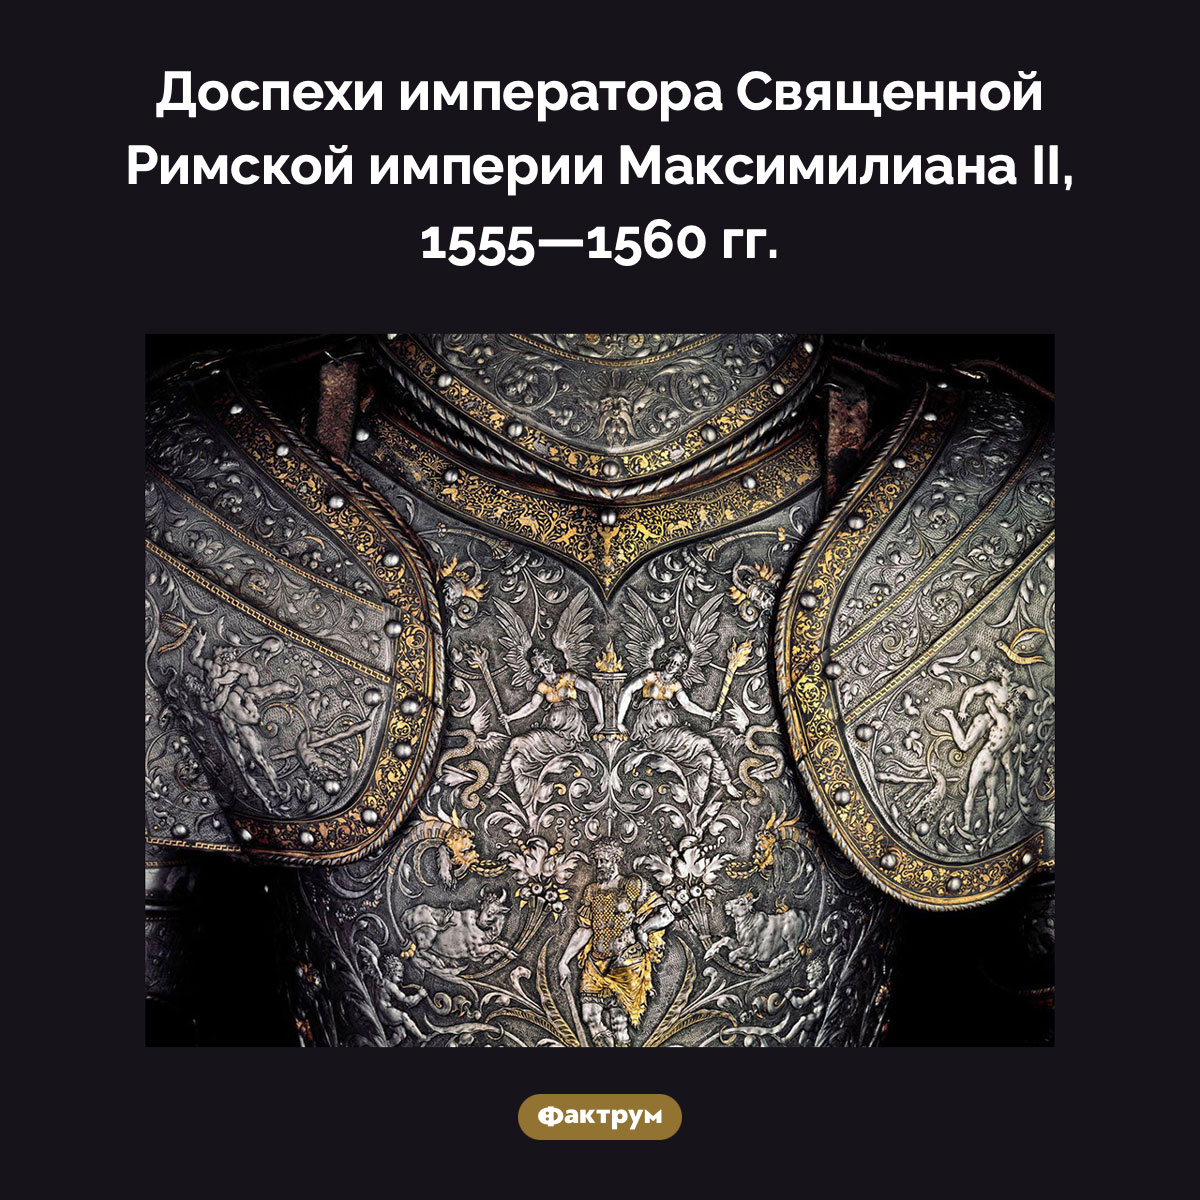 Доспехи Максимилиана II. Доспехи императора Священной Римской империи Максимилиана II, 1555-1560 гг.